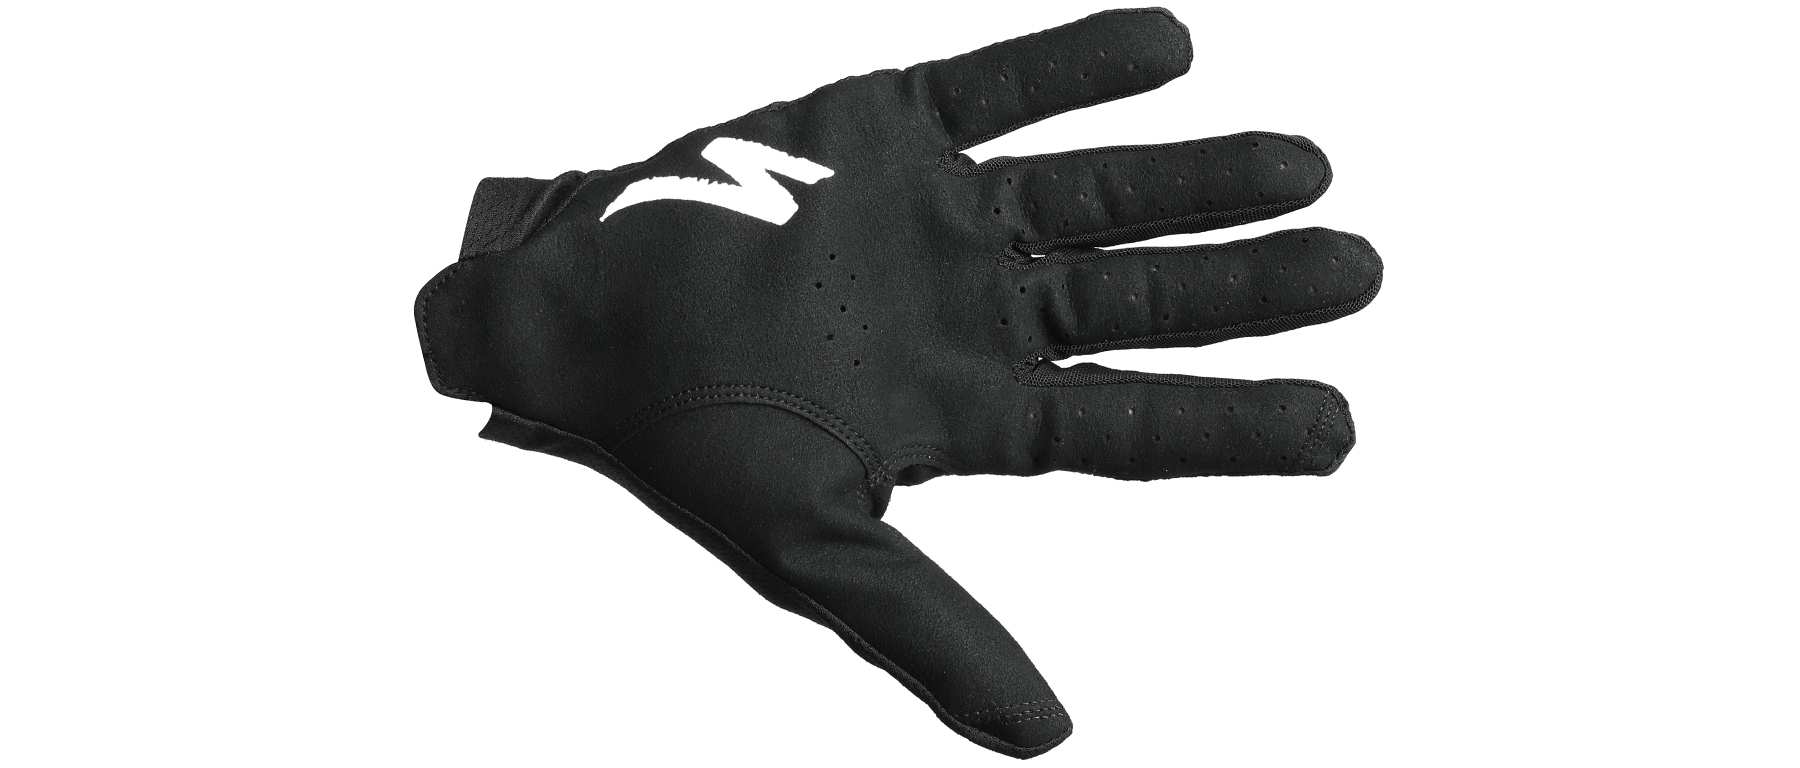 Specialized SL Pro LF Glove